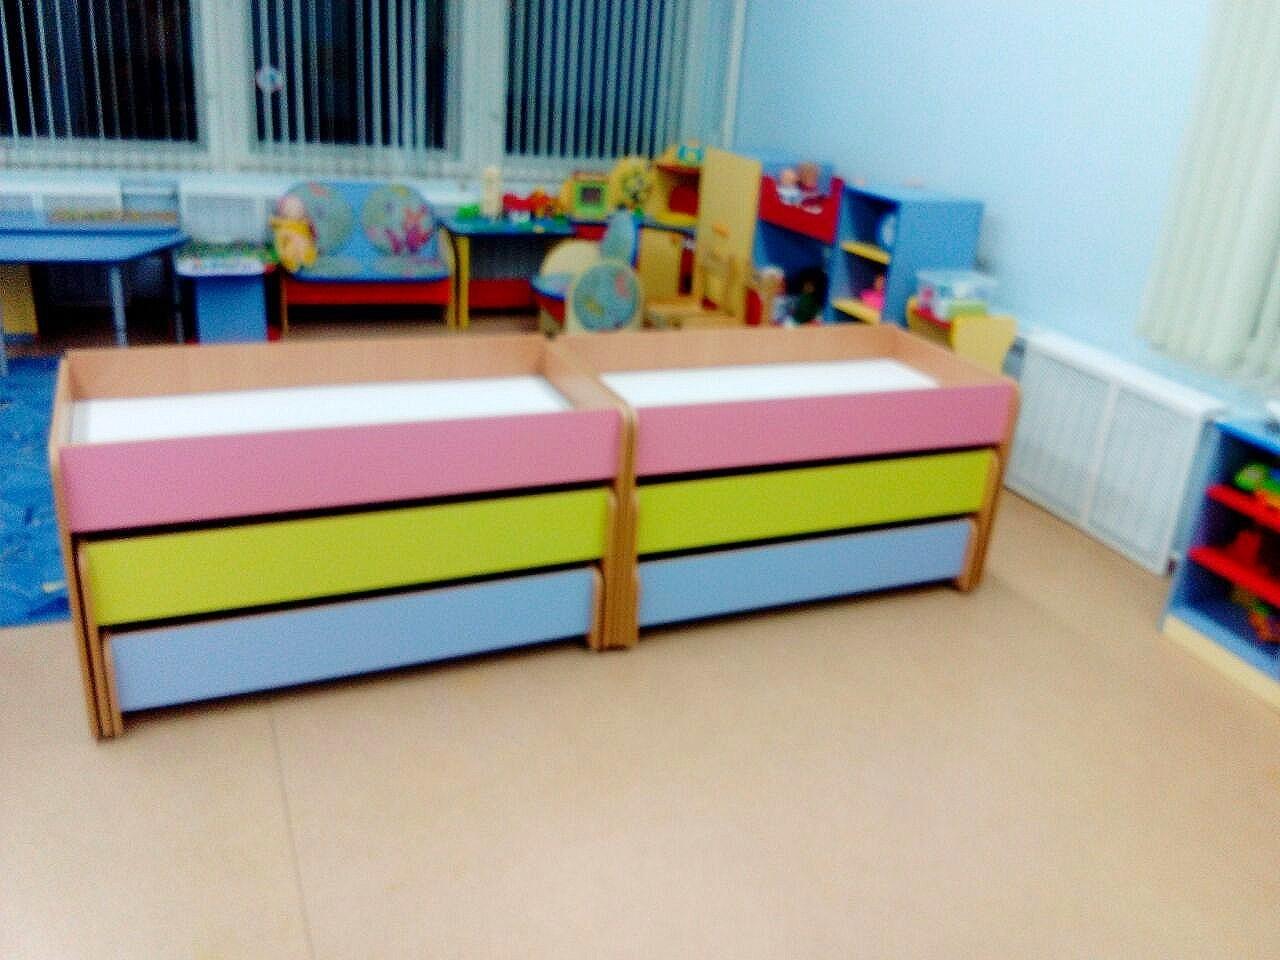 Трехъярусная кровать для детей выдвижная в детском саду